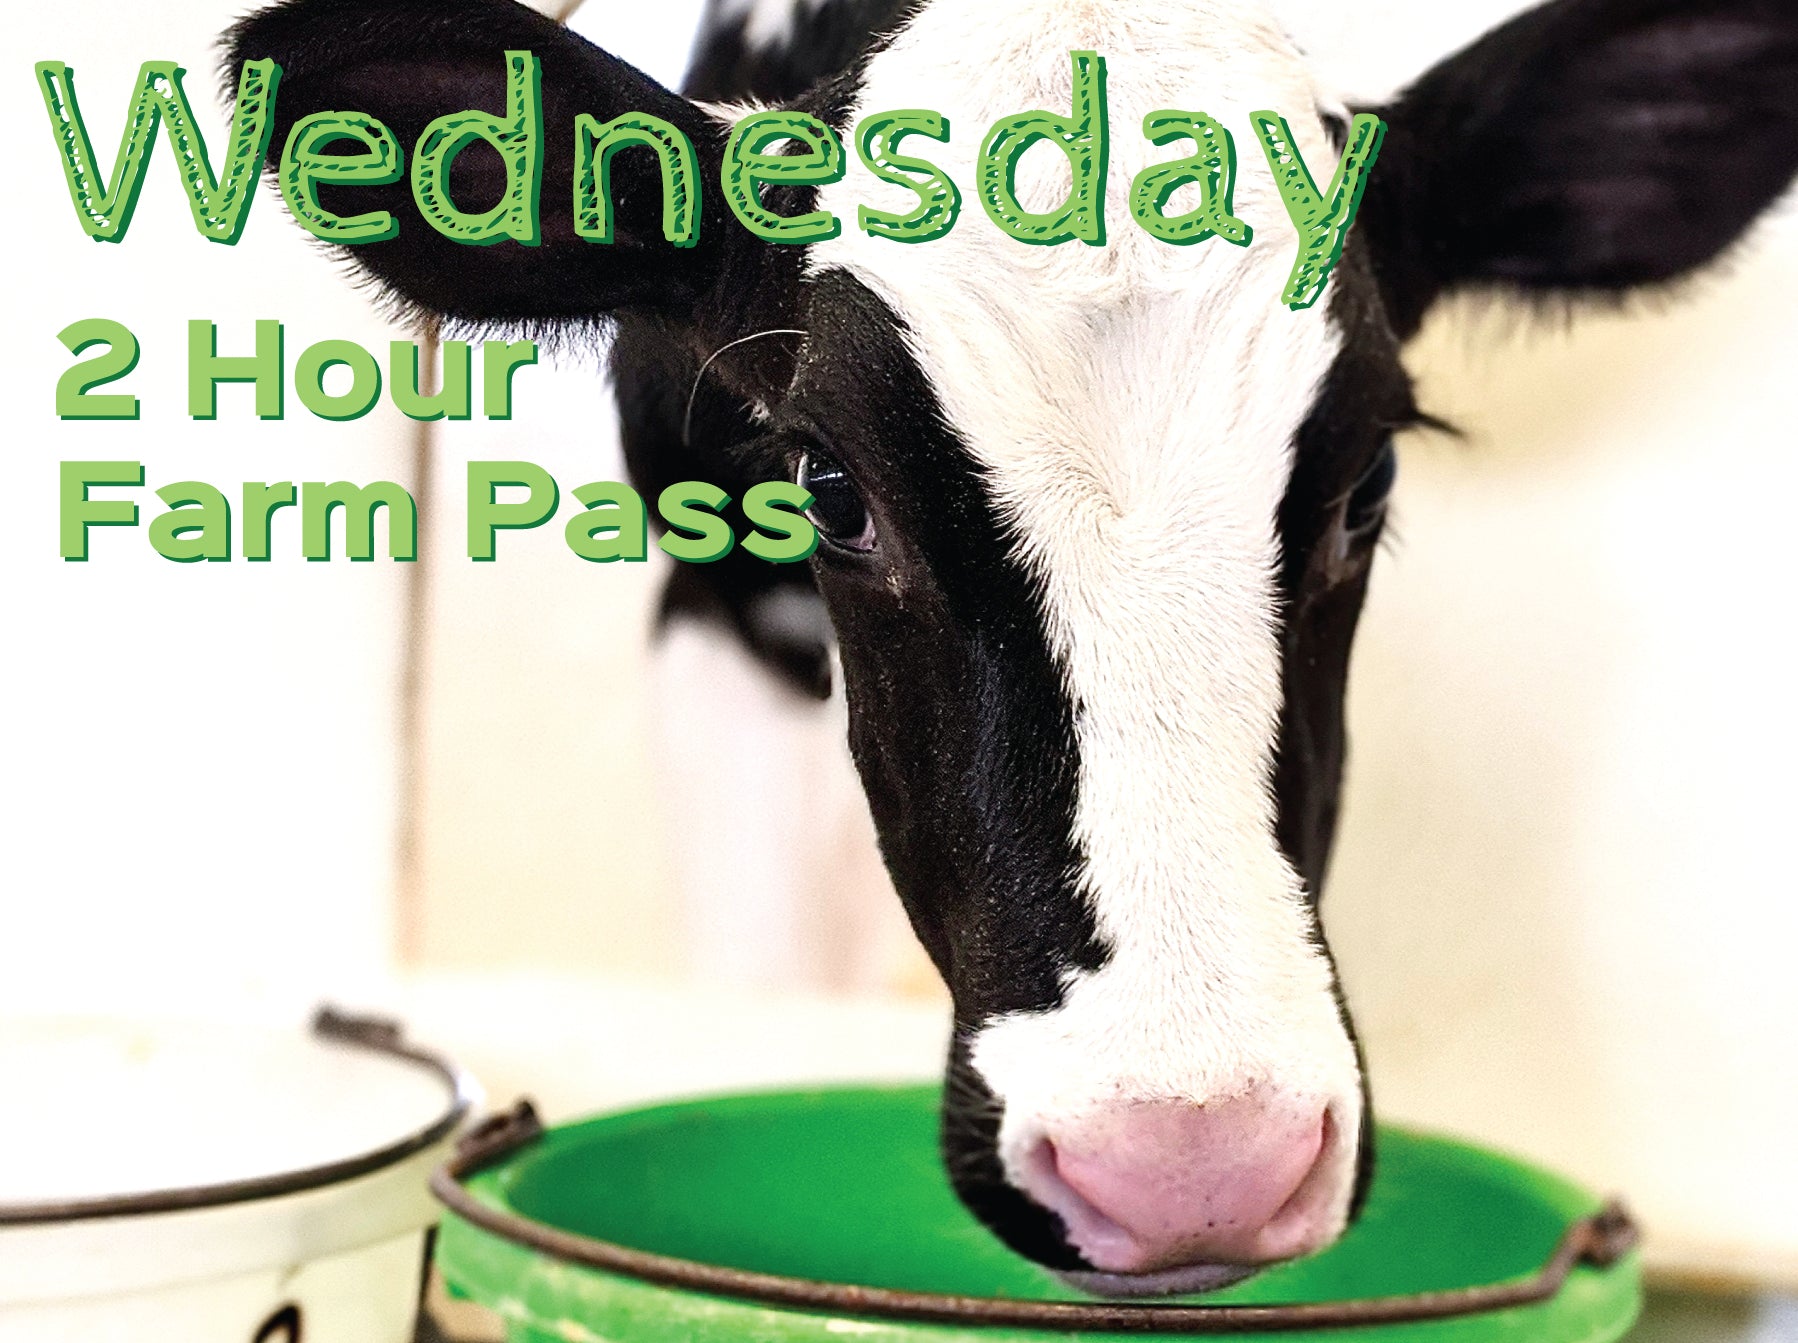 2 Hour Farm Pass Wednesday December 6th